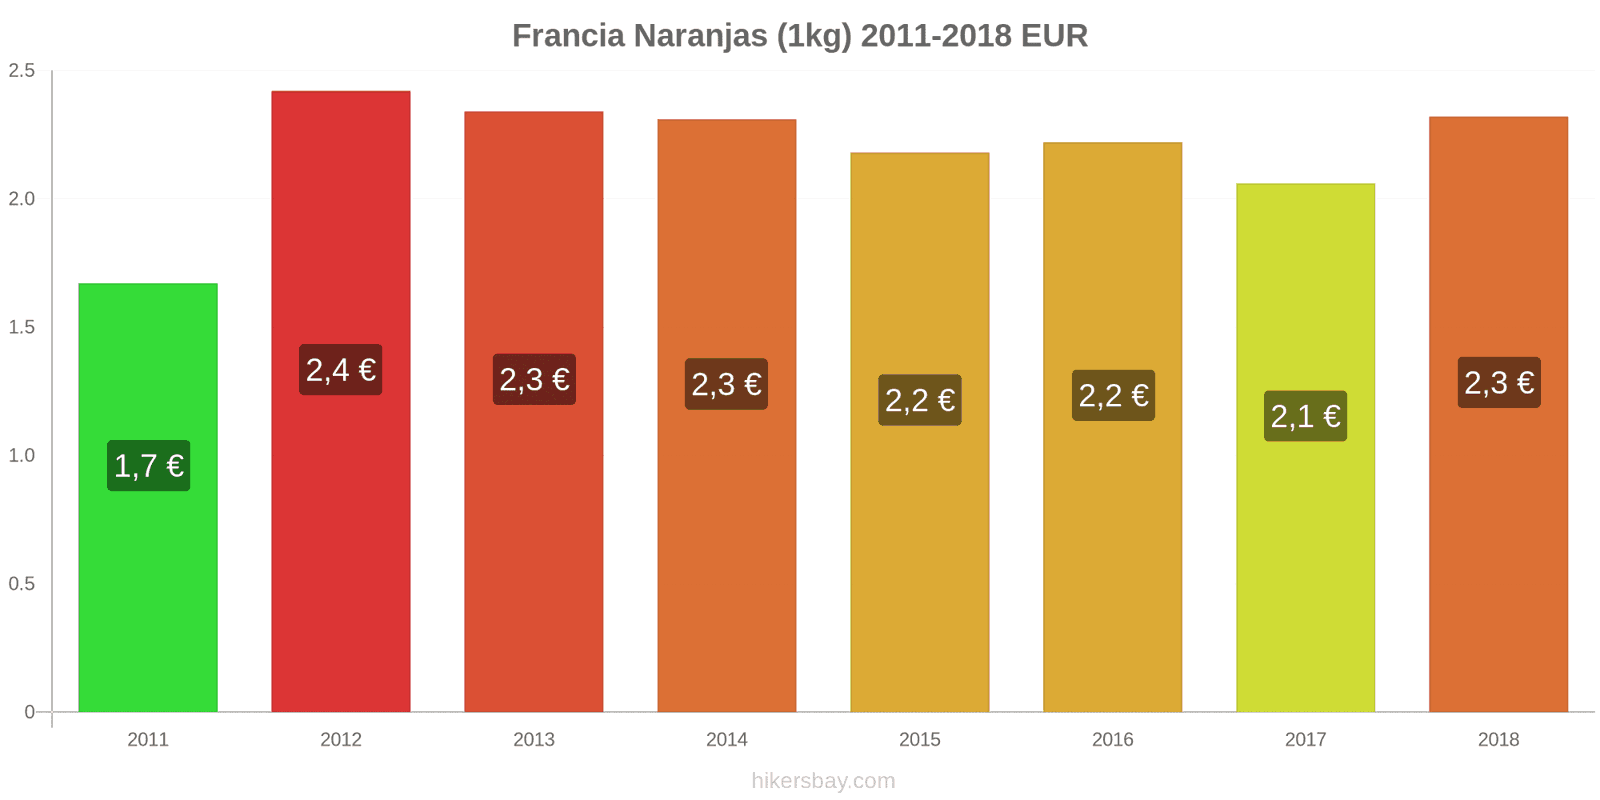 Francia cambios de precios Naranjas (1kg) hikersbay.com